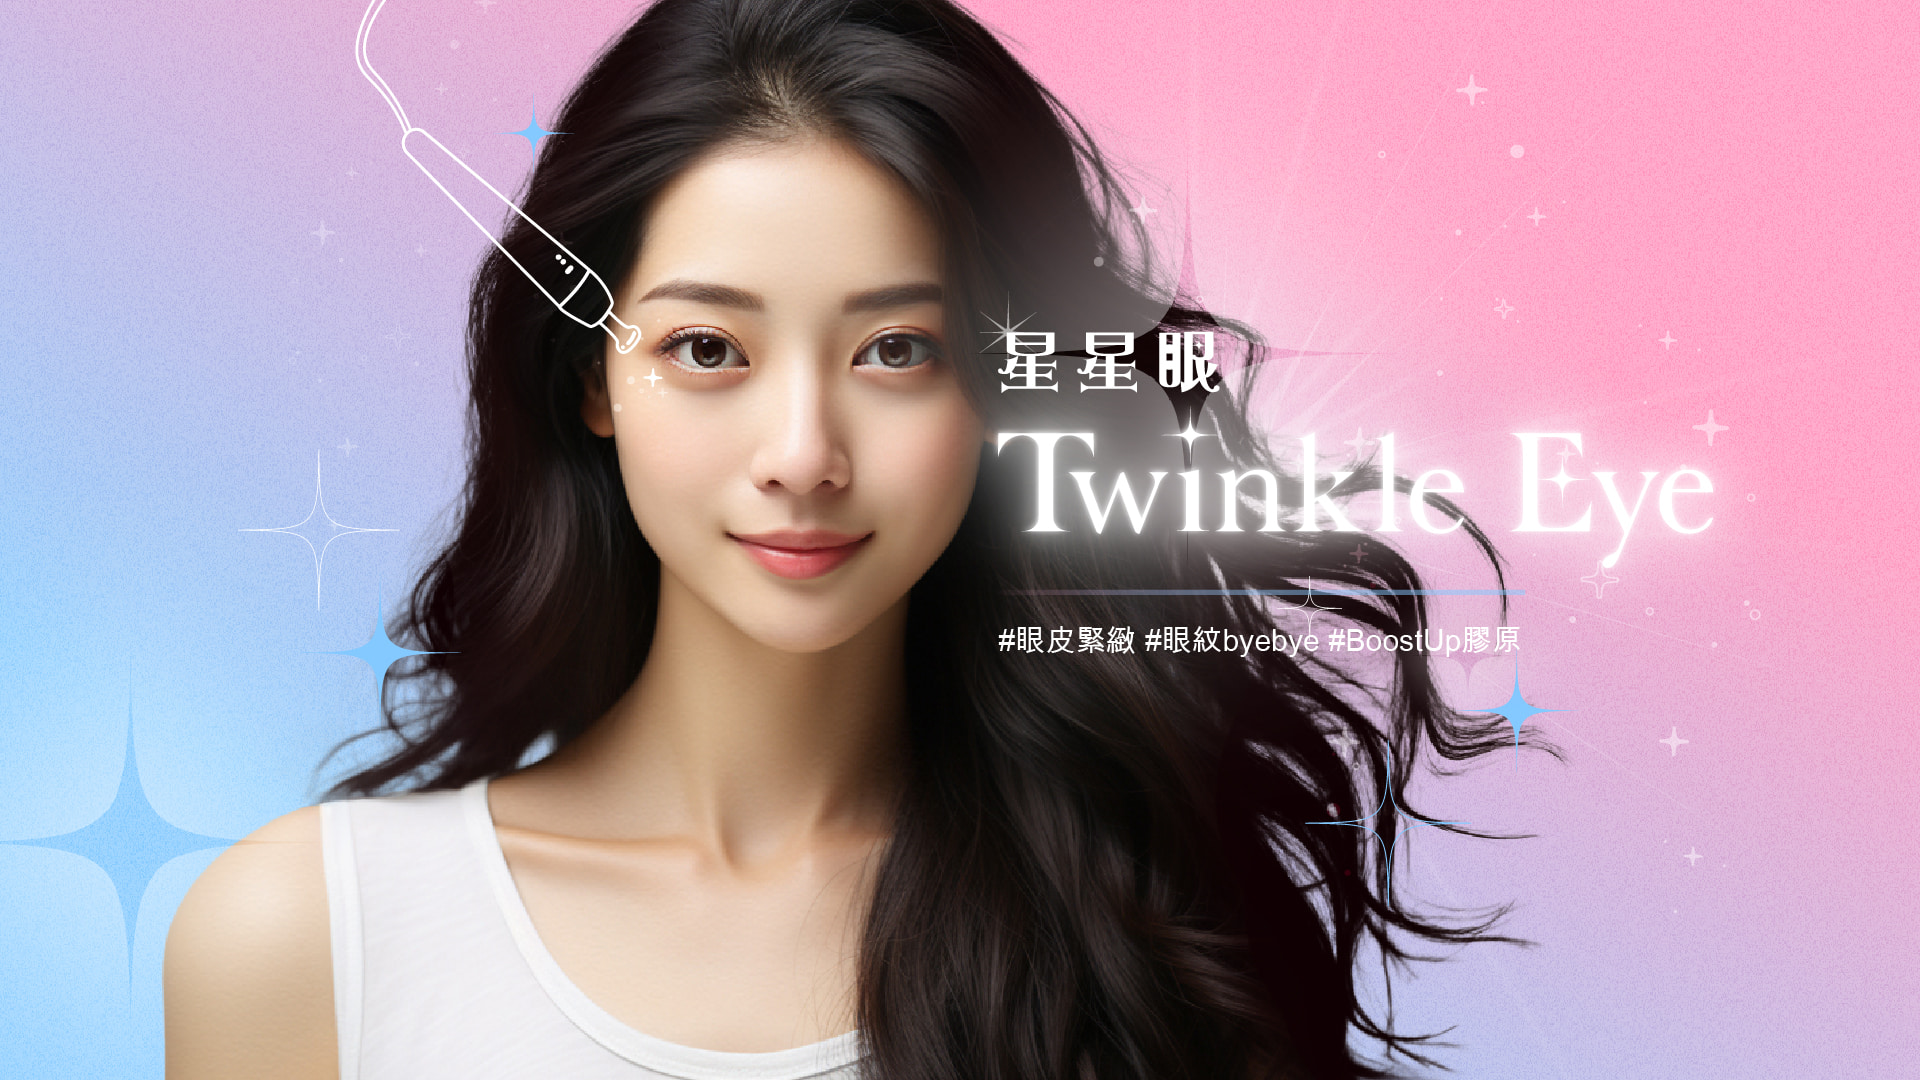 twinkle eye banner-07-100-min